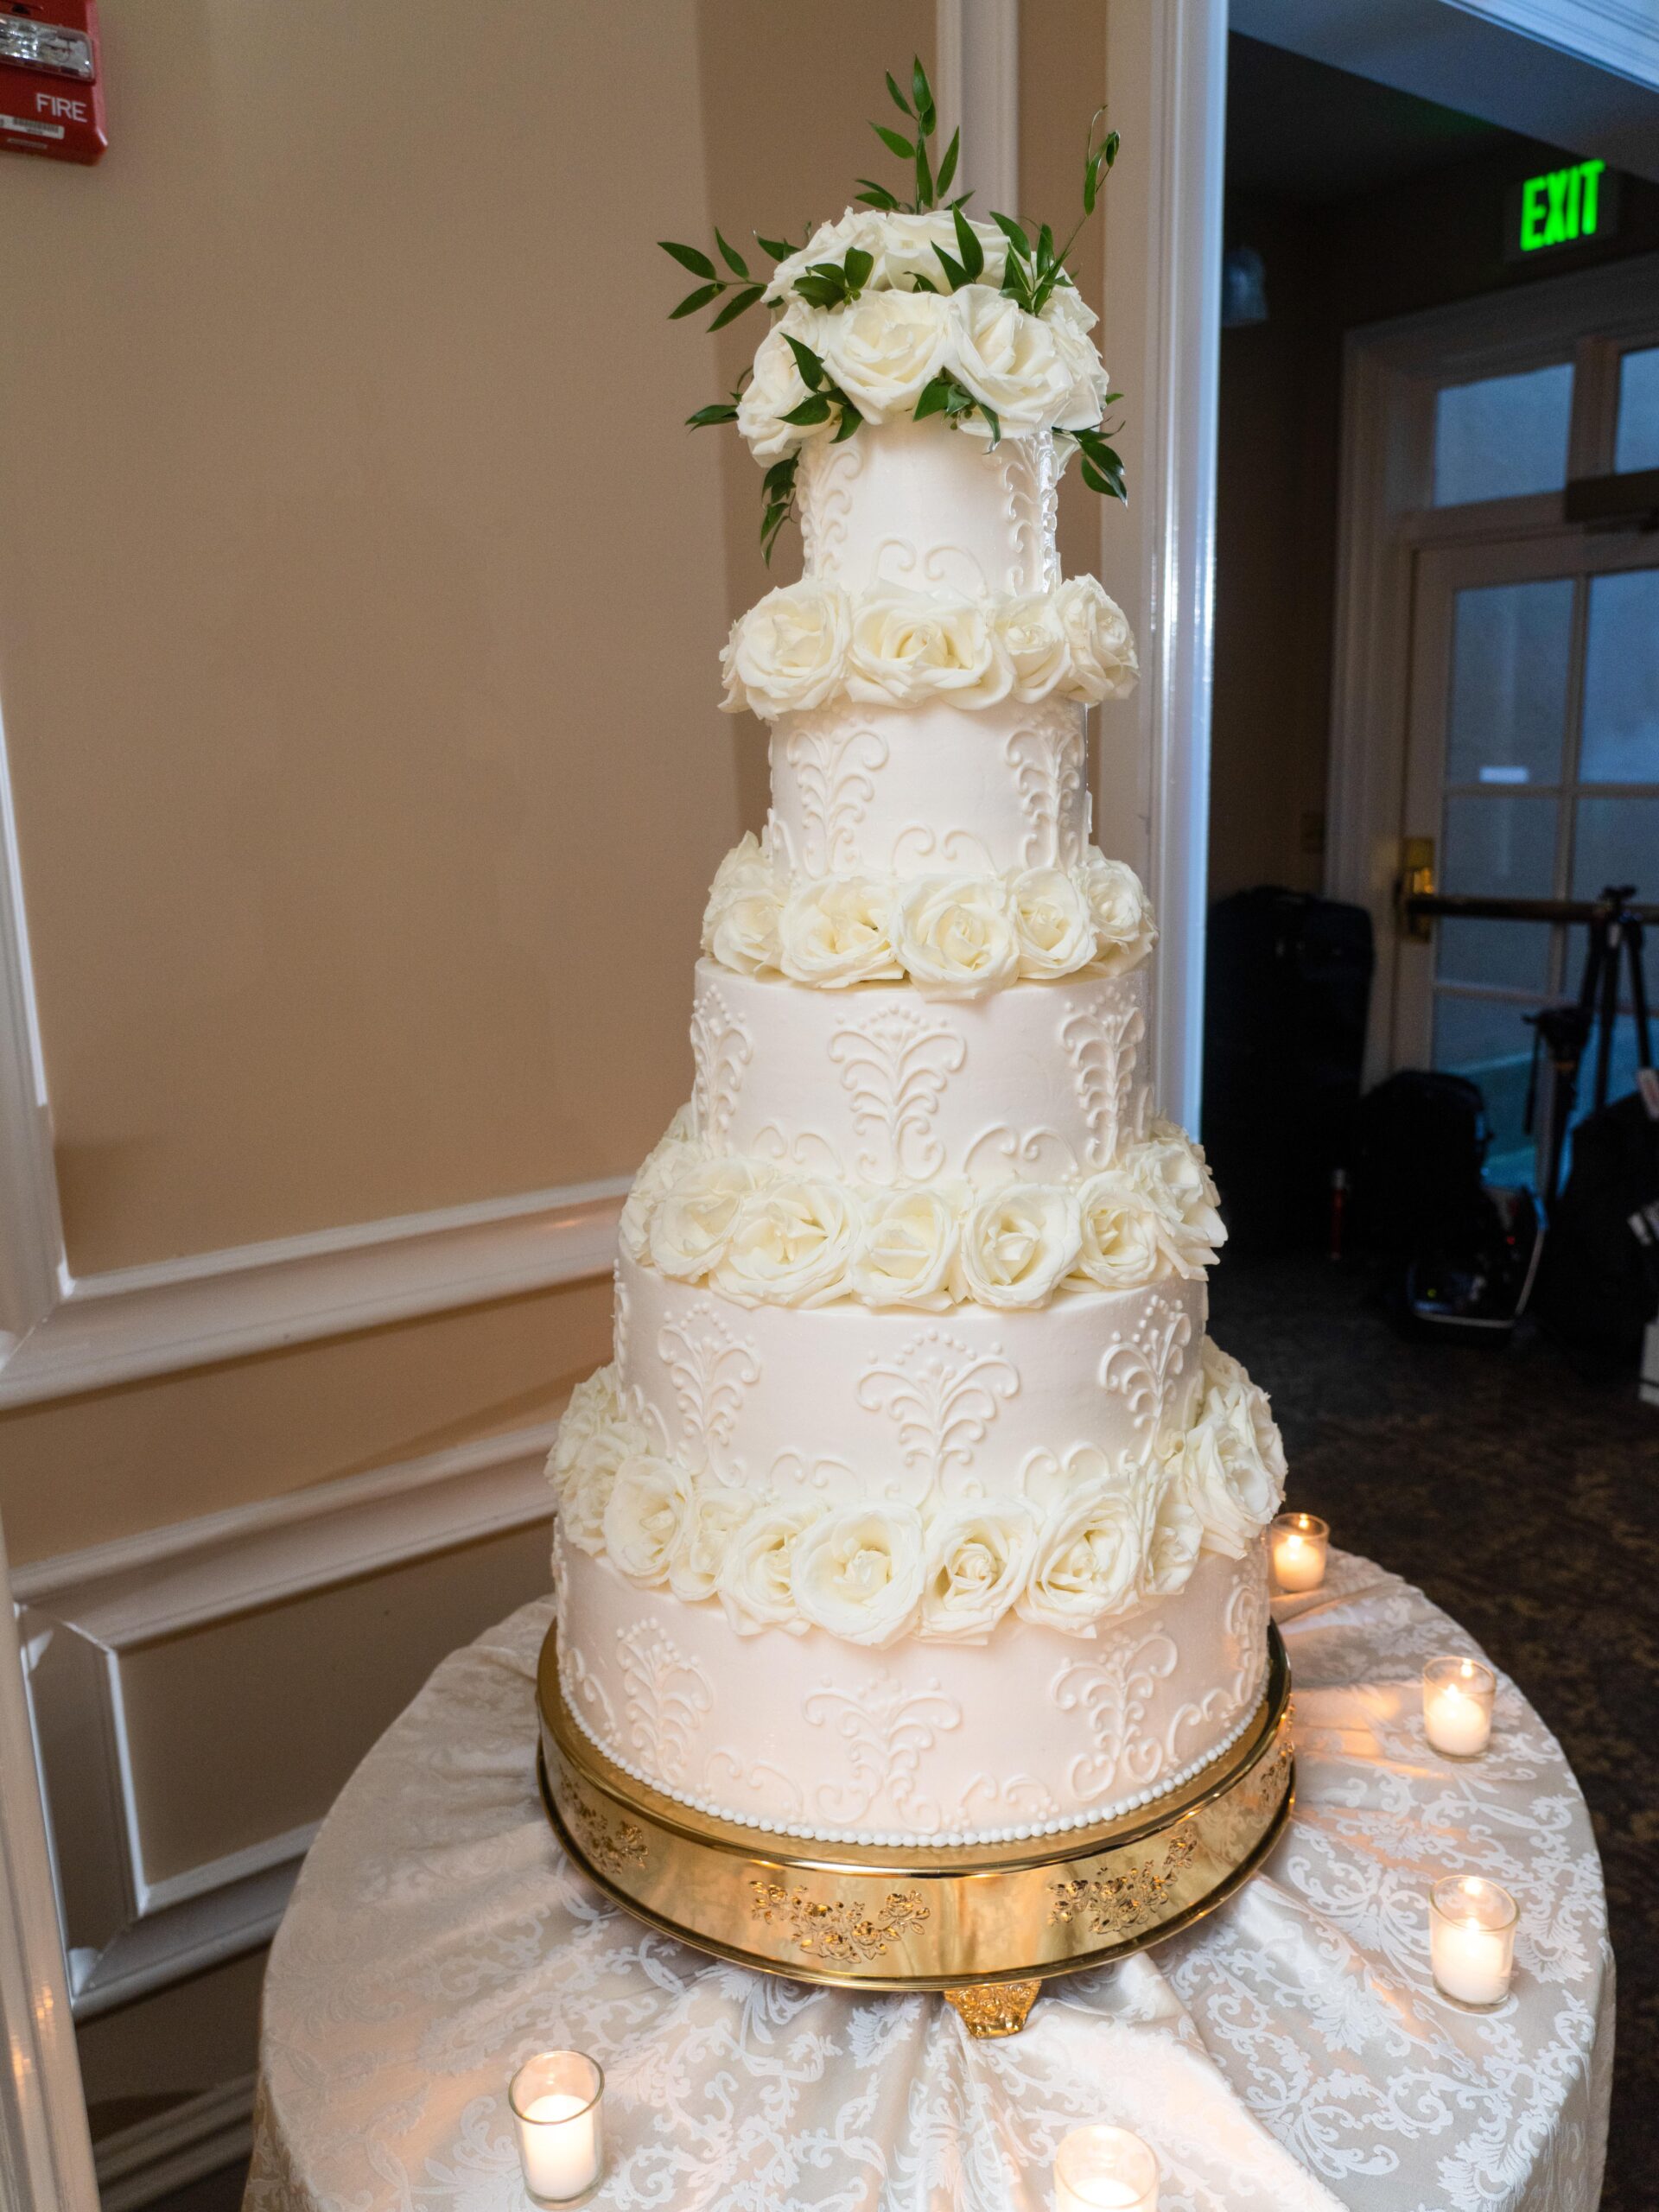 OHEKA CASTLE WEDDING CAKE